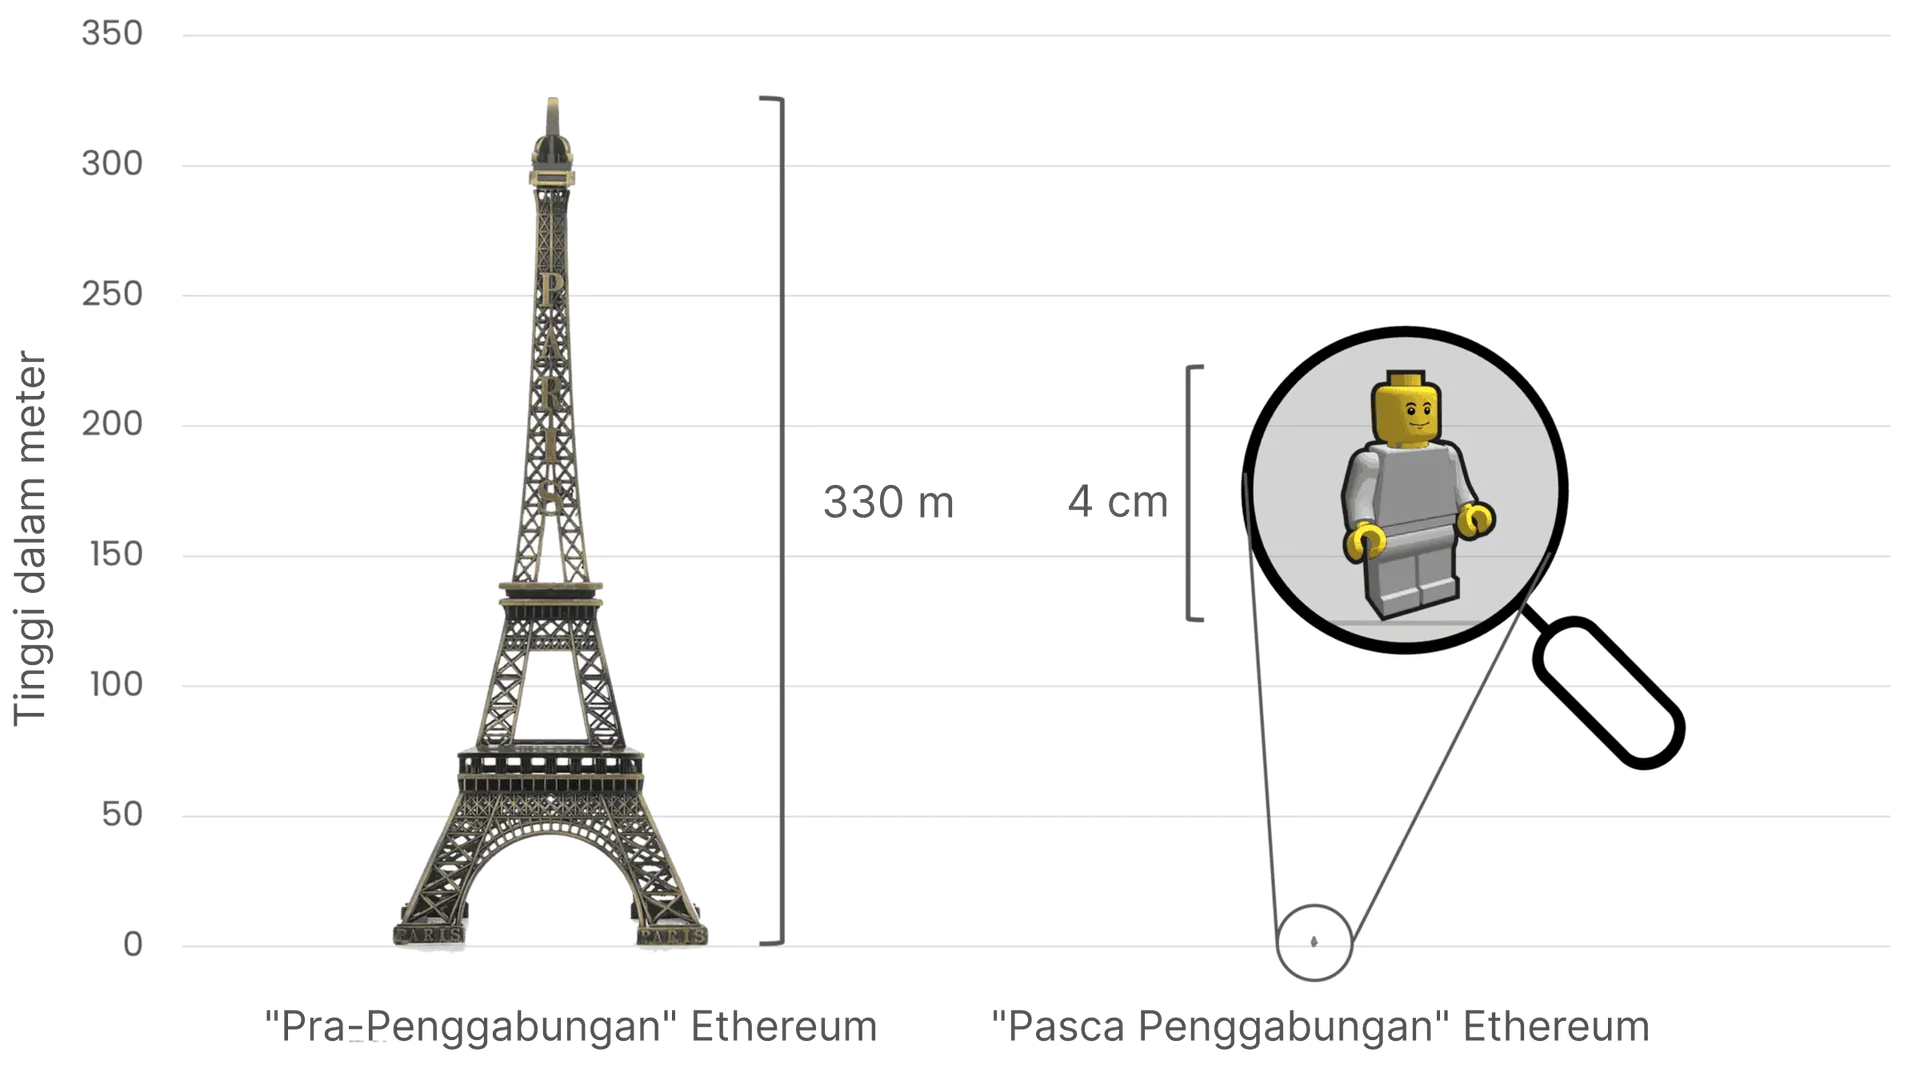 Membandingkan konsumsi energi Ethereum sebelum dan sesudah Penggabungan, menggunakan Menara Eiffel (tinggi 330 meter) di sebelah kiri untuk melambangkan konsumsi energi yang tinggi sebelum Penggabungan, dan figur Lego kecil setinggi 4 cm di sebelah kanan untuk melambangkan pengurangan dramatis dalam penggunaan energi setelah Penggabungan